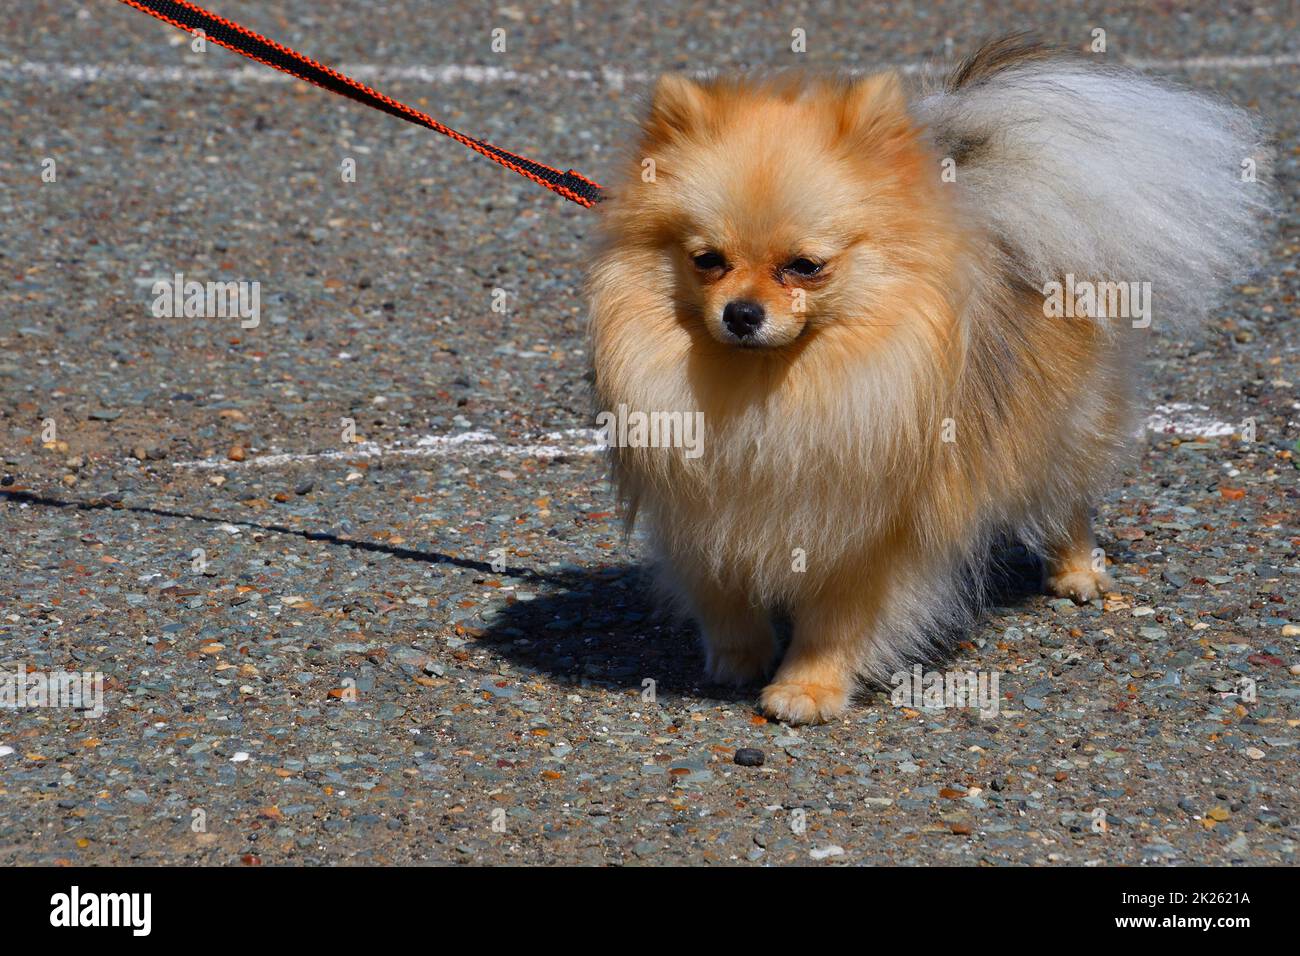 Pomeranian breed dog Stock Photo